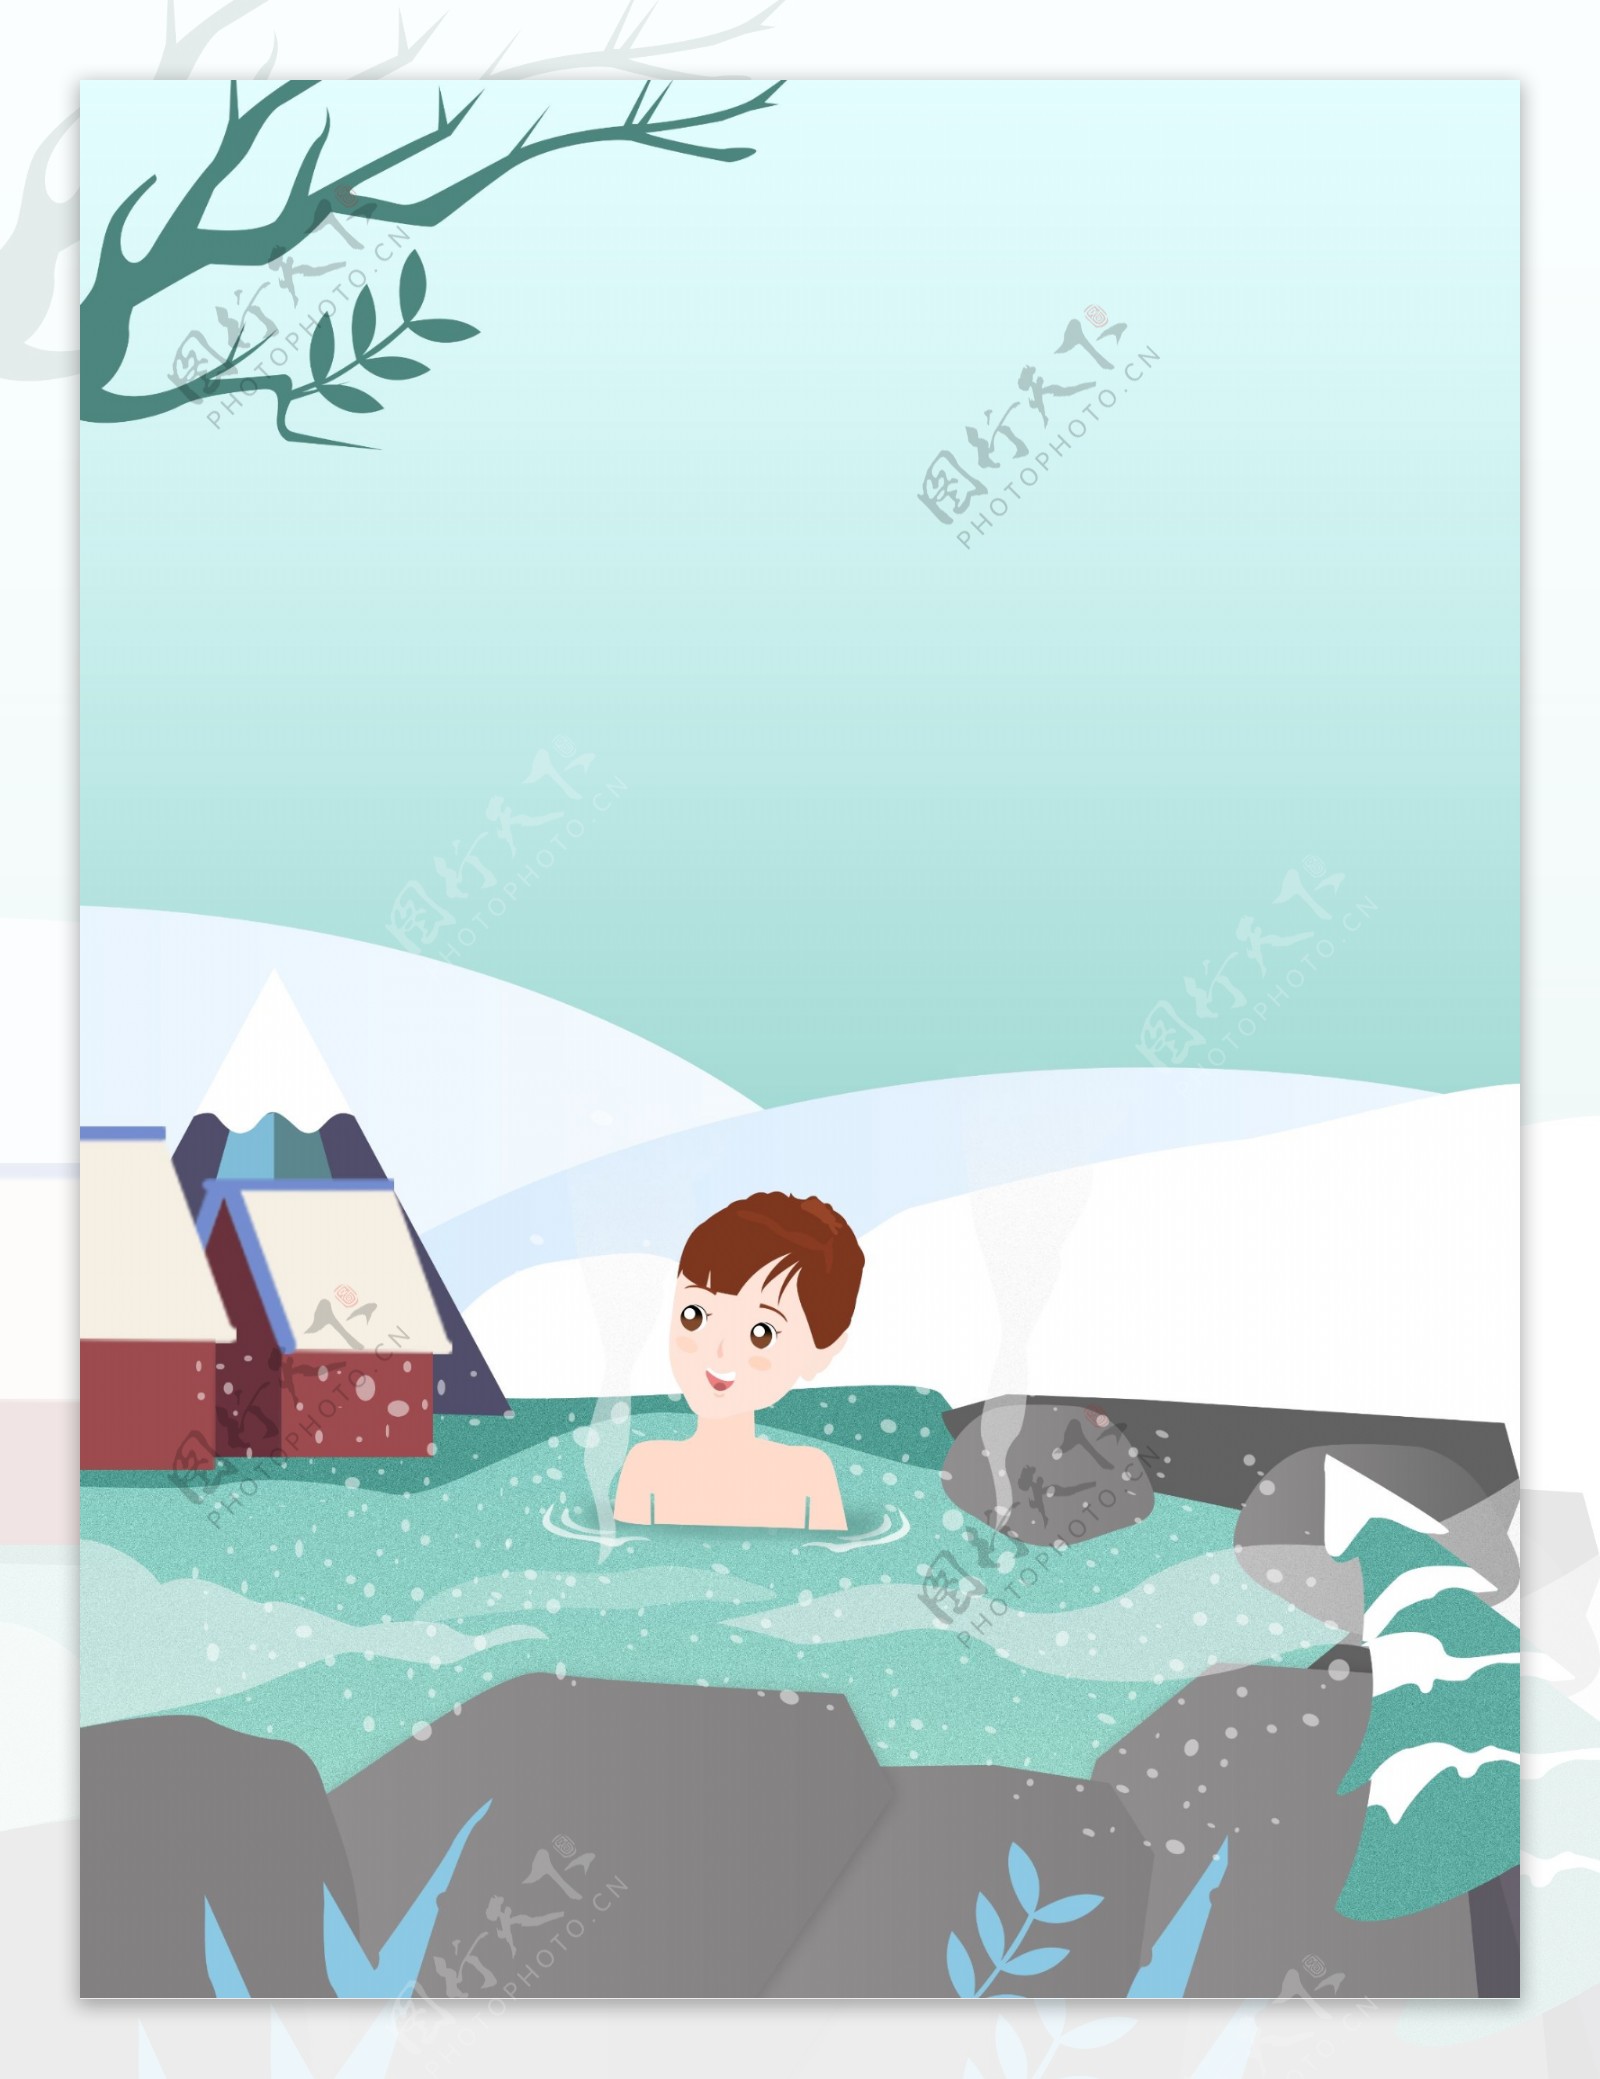 彩绘冬季温泉背景设计